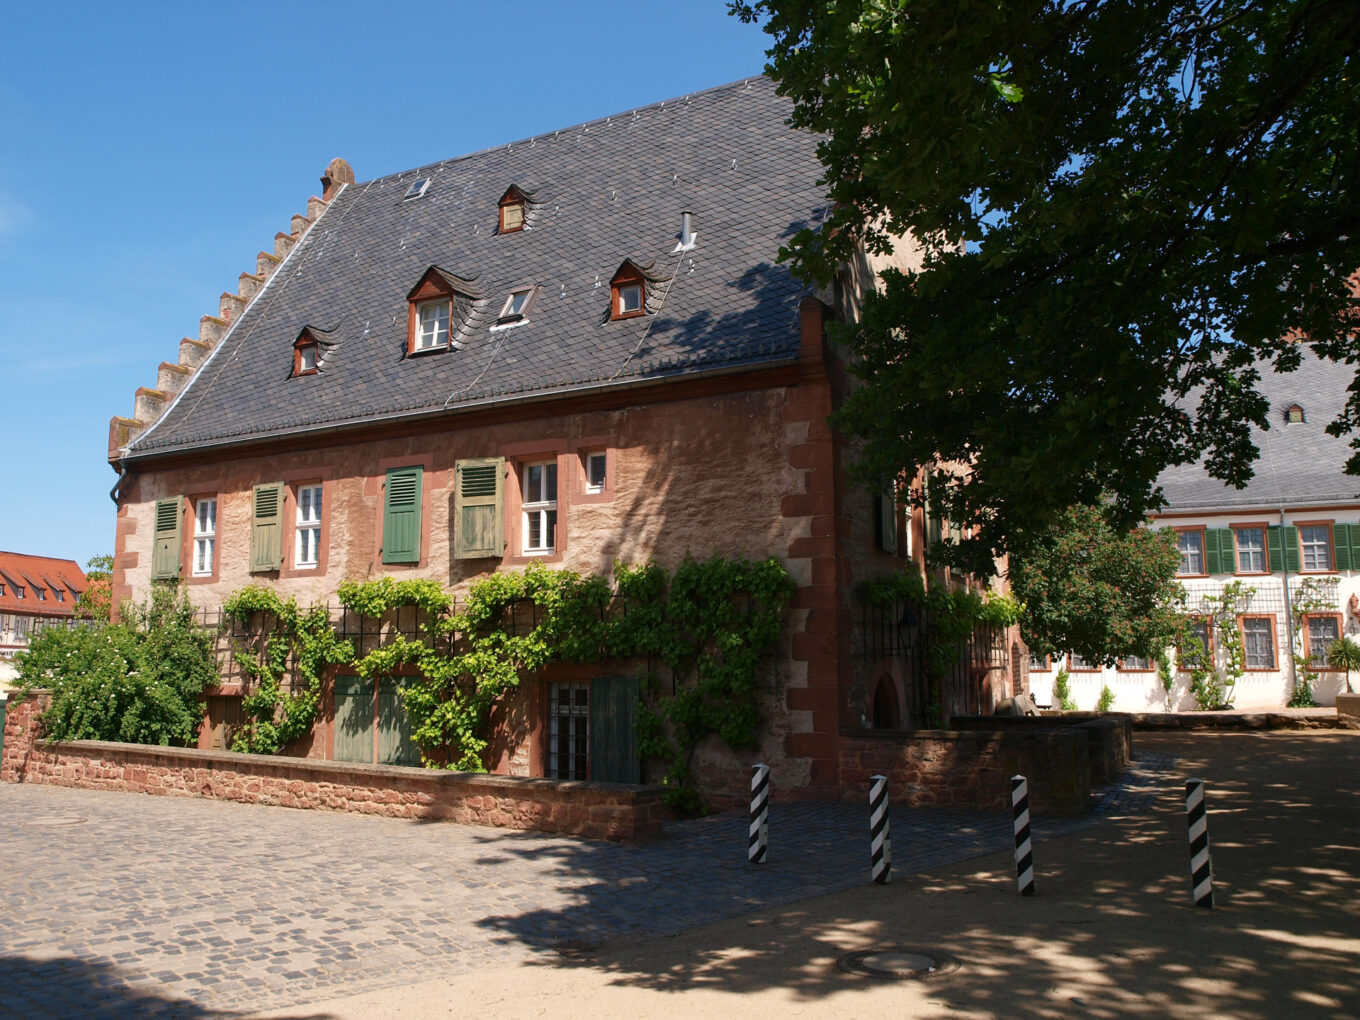 Seligenstadt Abbey, mill